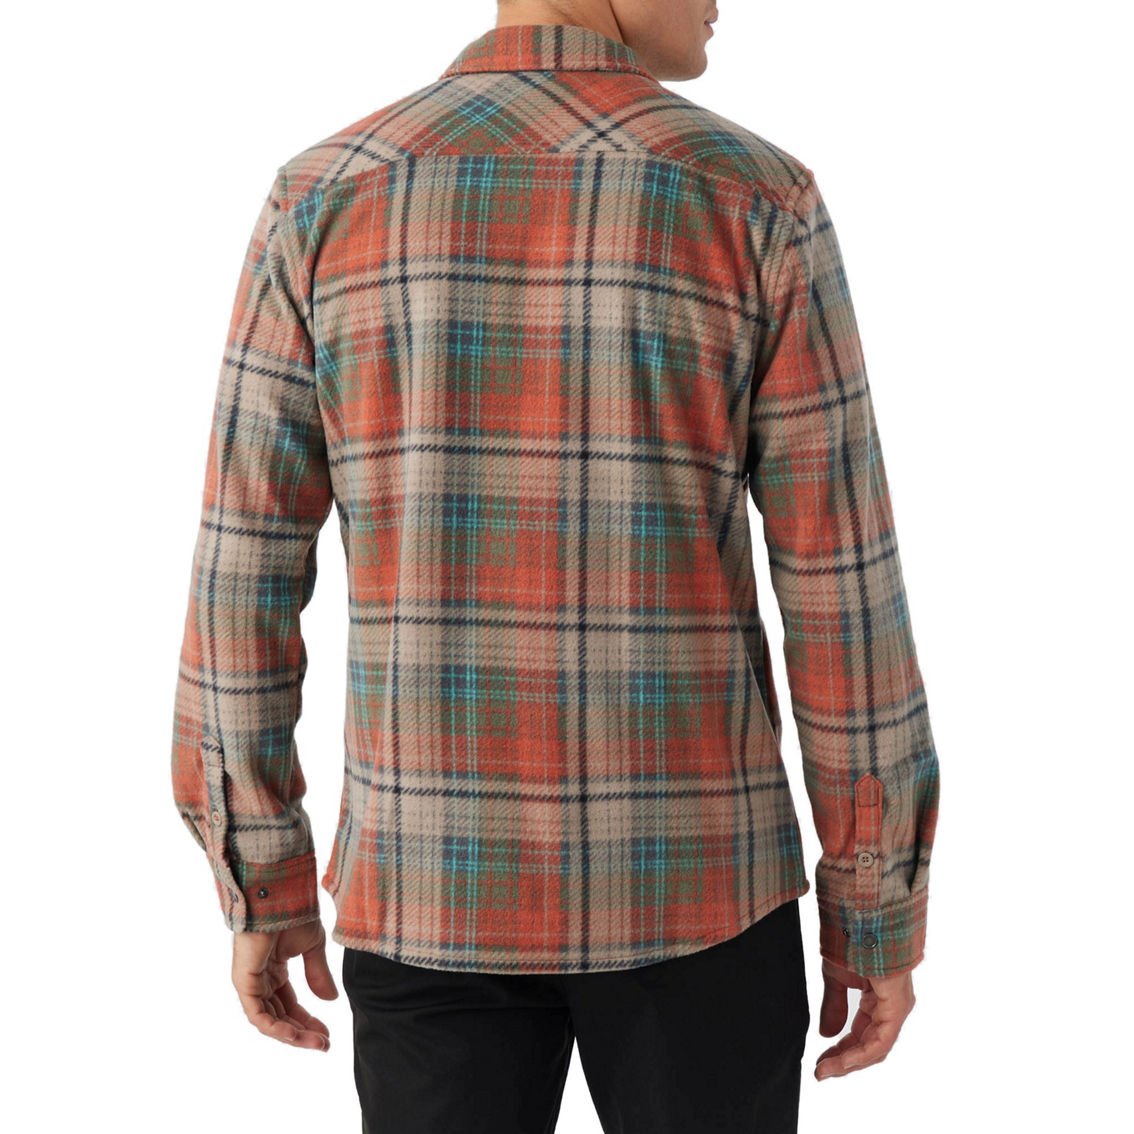 O'neill Glacier Plaid Superfleece Shirt | Shirts | Clothing ...